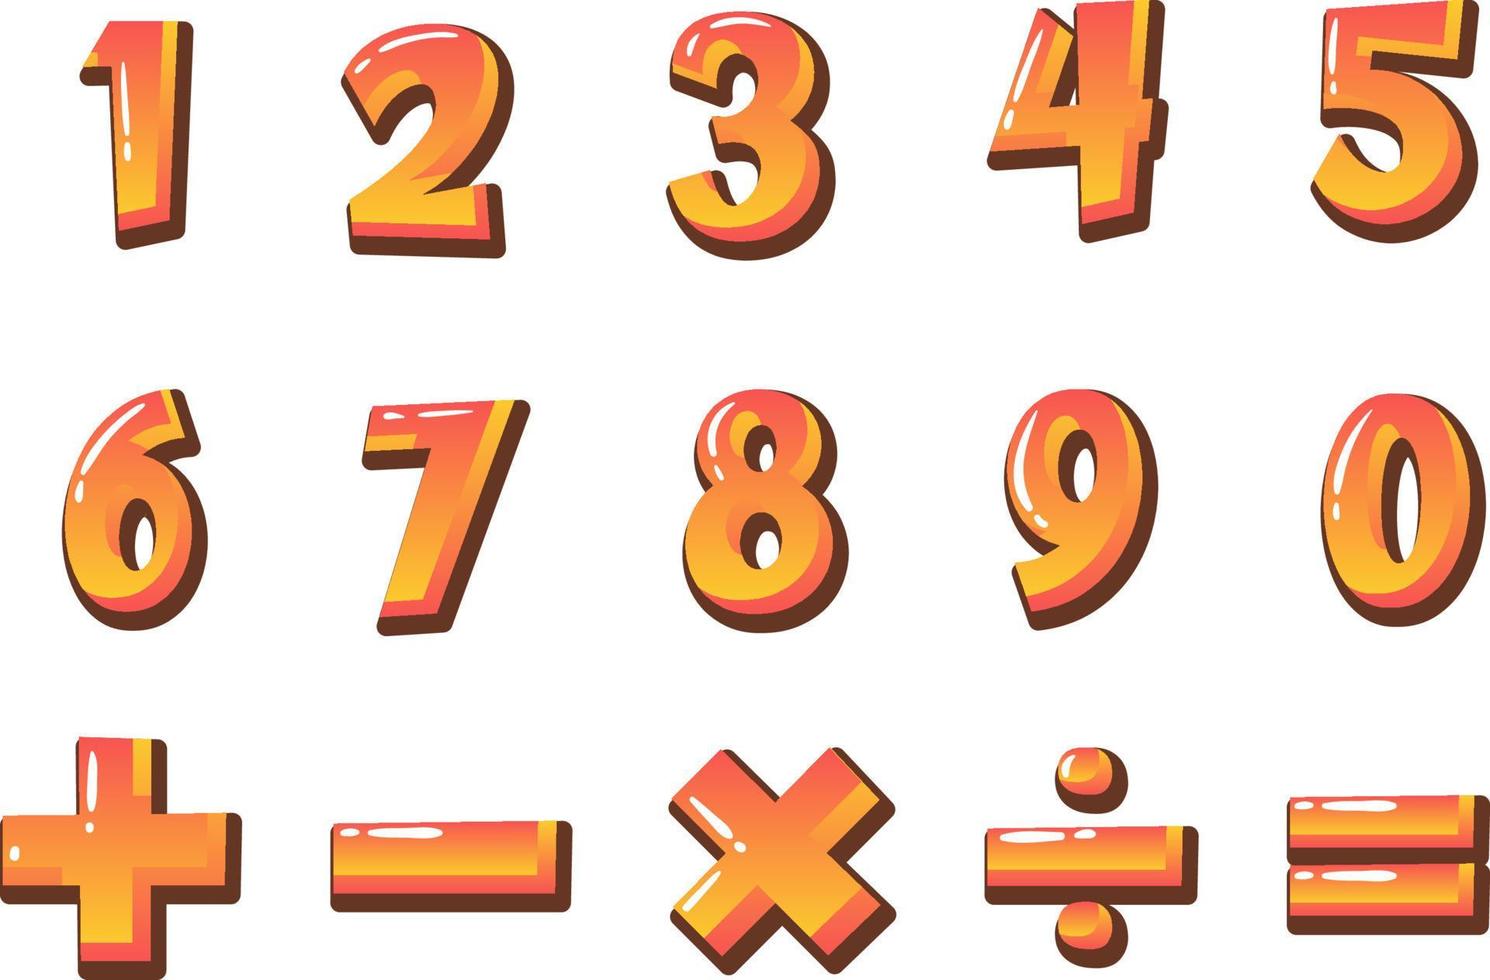 contando o número de 0 a 9 e símbolos matemáticos vetor